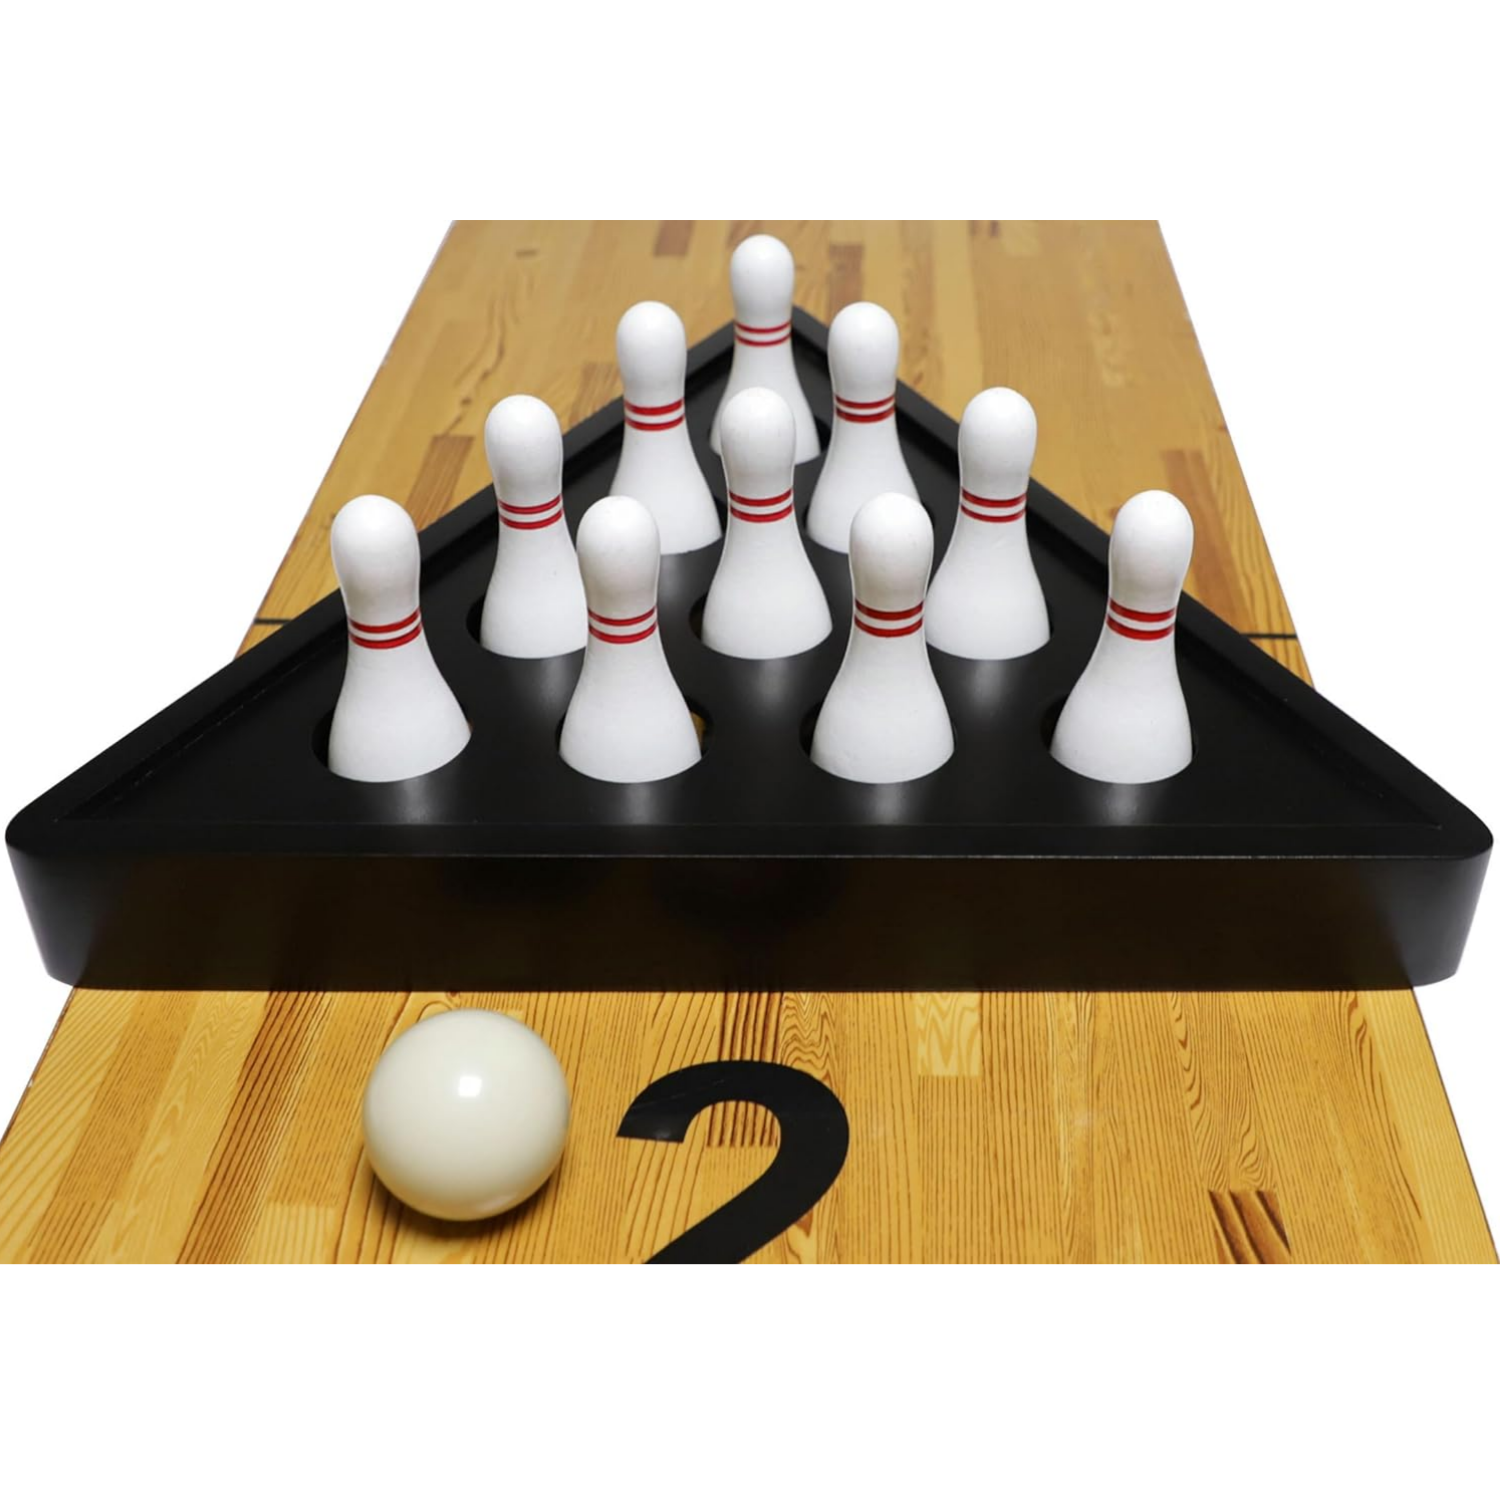 Shuffleboard Bowling Pin Set-Hardwood White